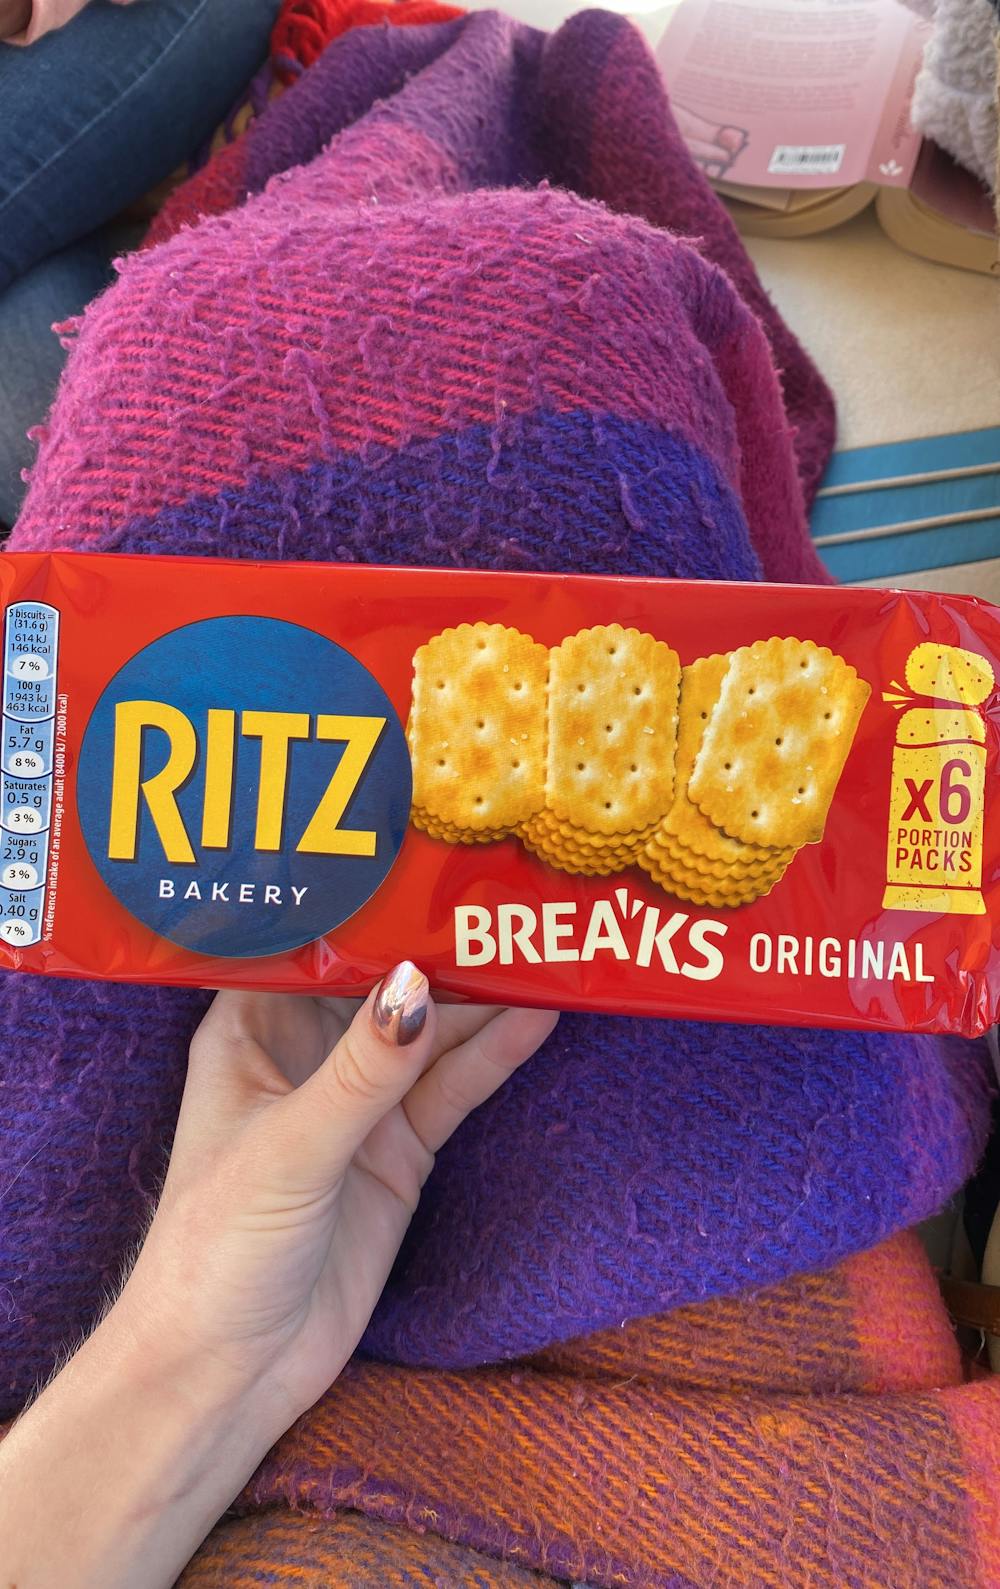 Ritz breaks original, Ritz bakery